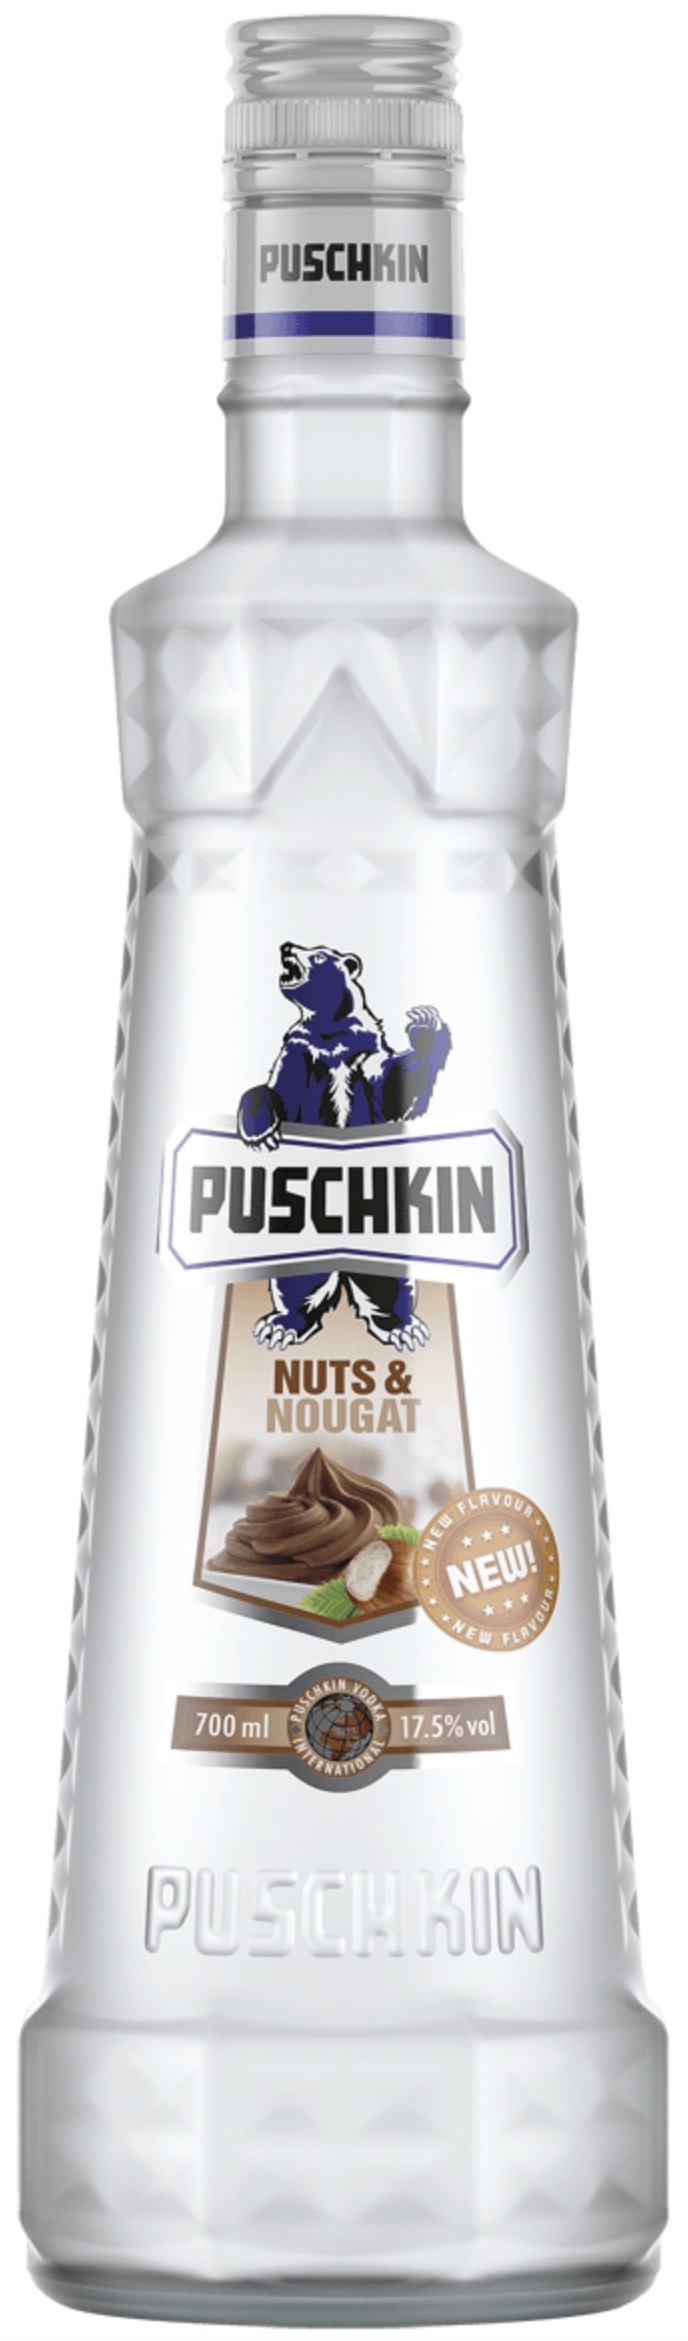 Puschkin Nuts Nougat 17,5% 0,7L